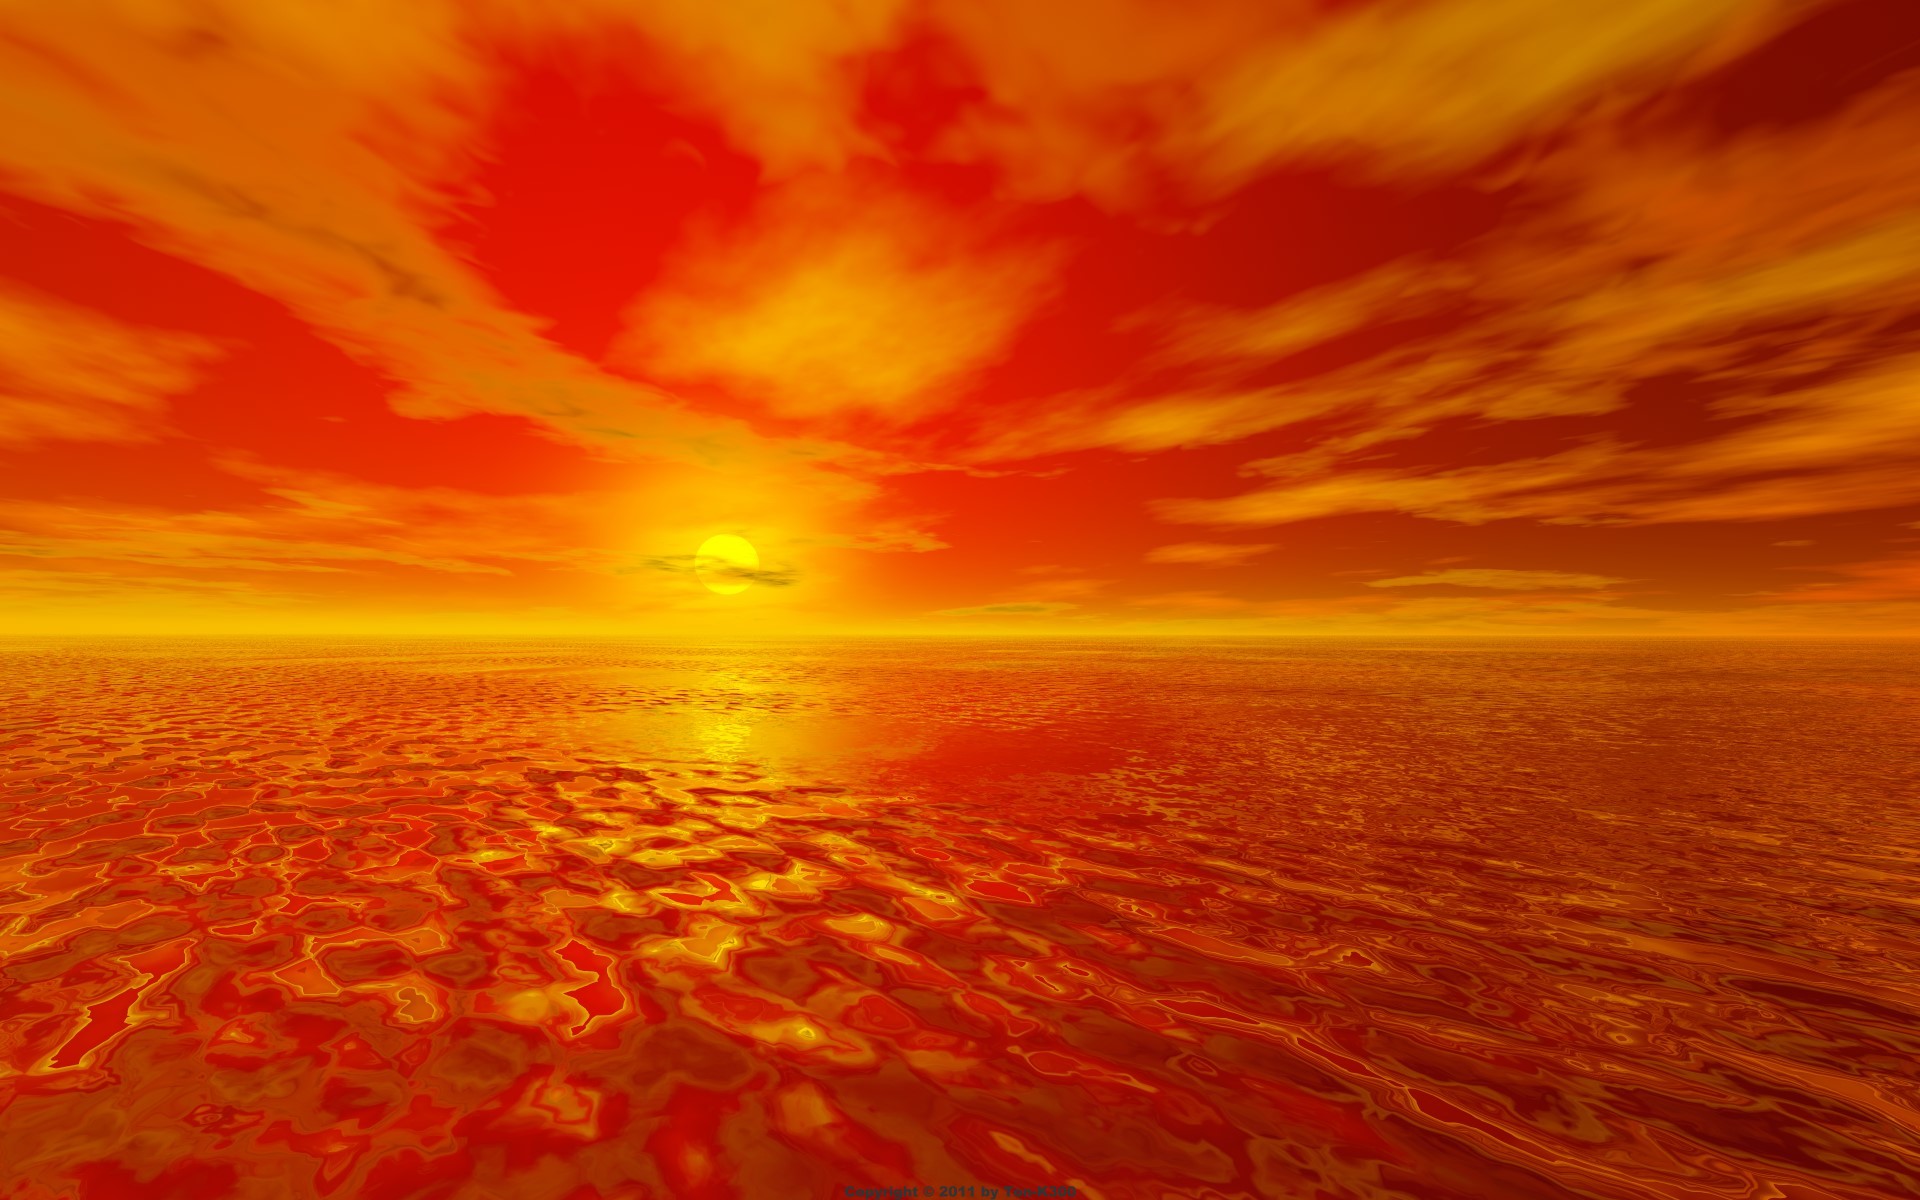 Скачать обои бесплатно Небо, Море, Солнце, Горизонт, Океан, Земля/природа, Закат Солнца, Оранжевый Цвет) картинка на рабочий стол ПК